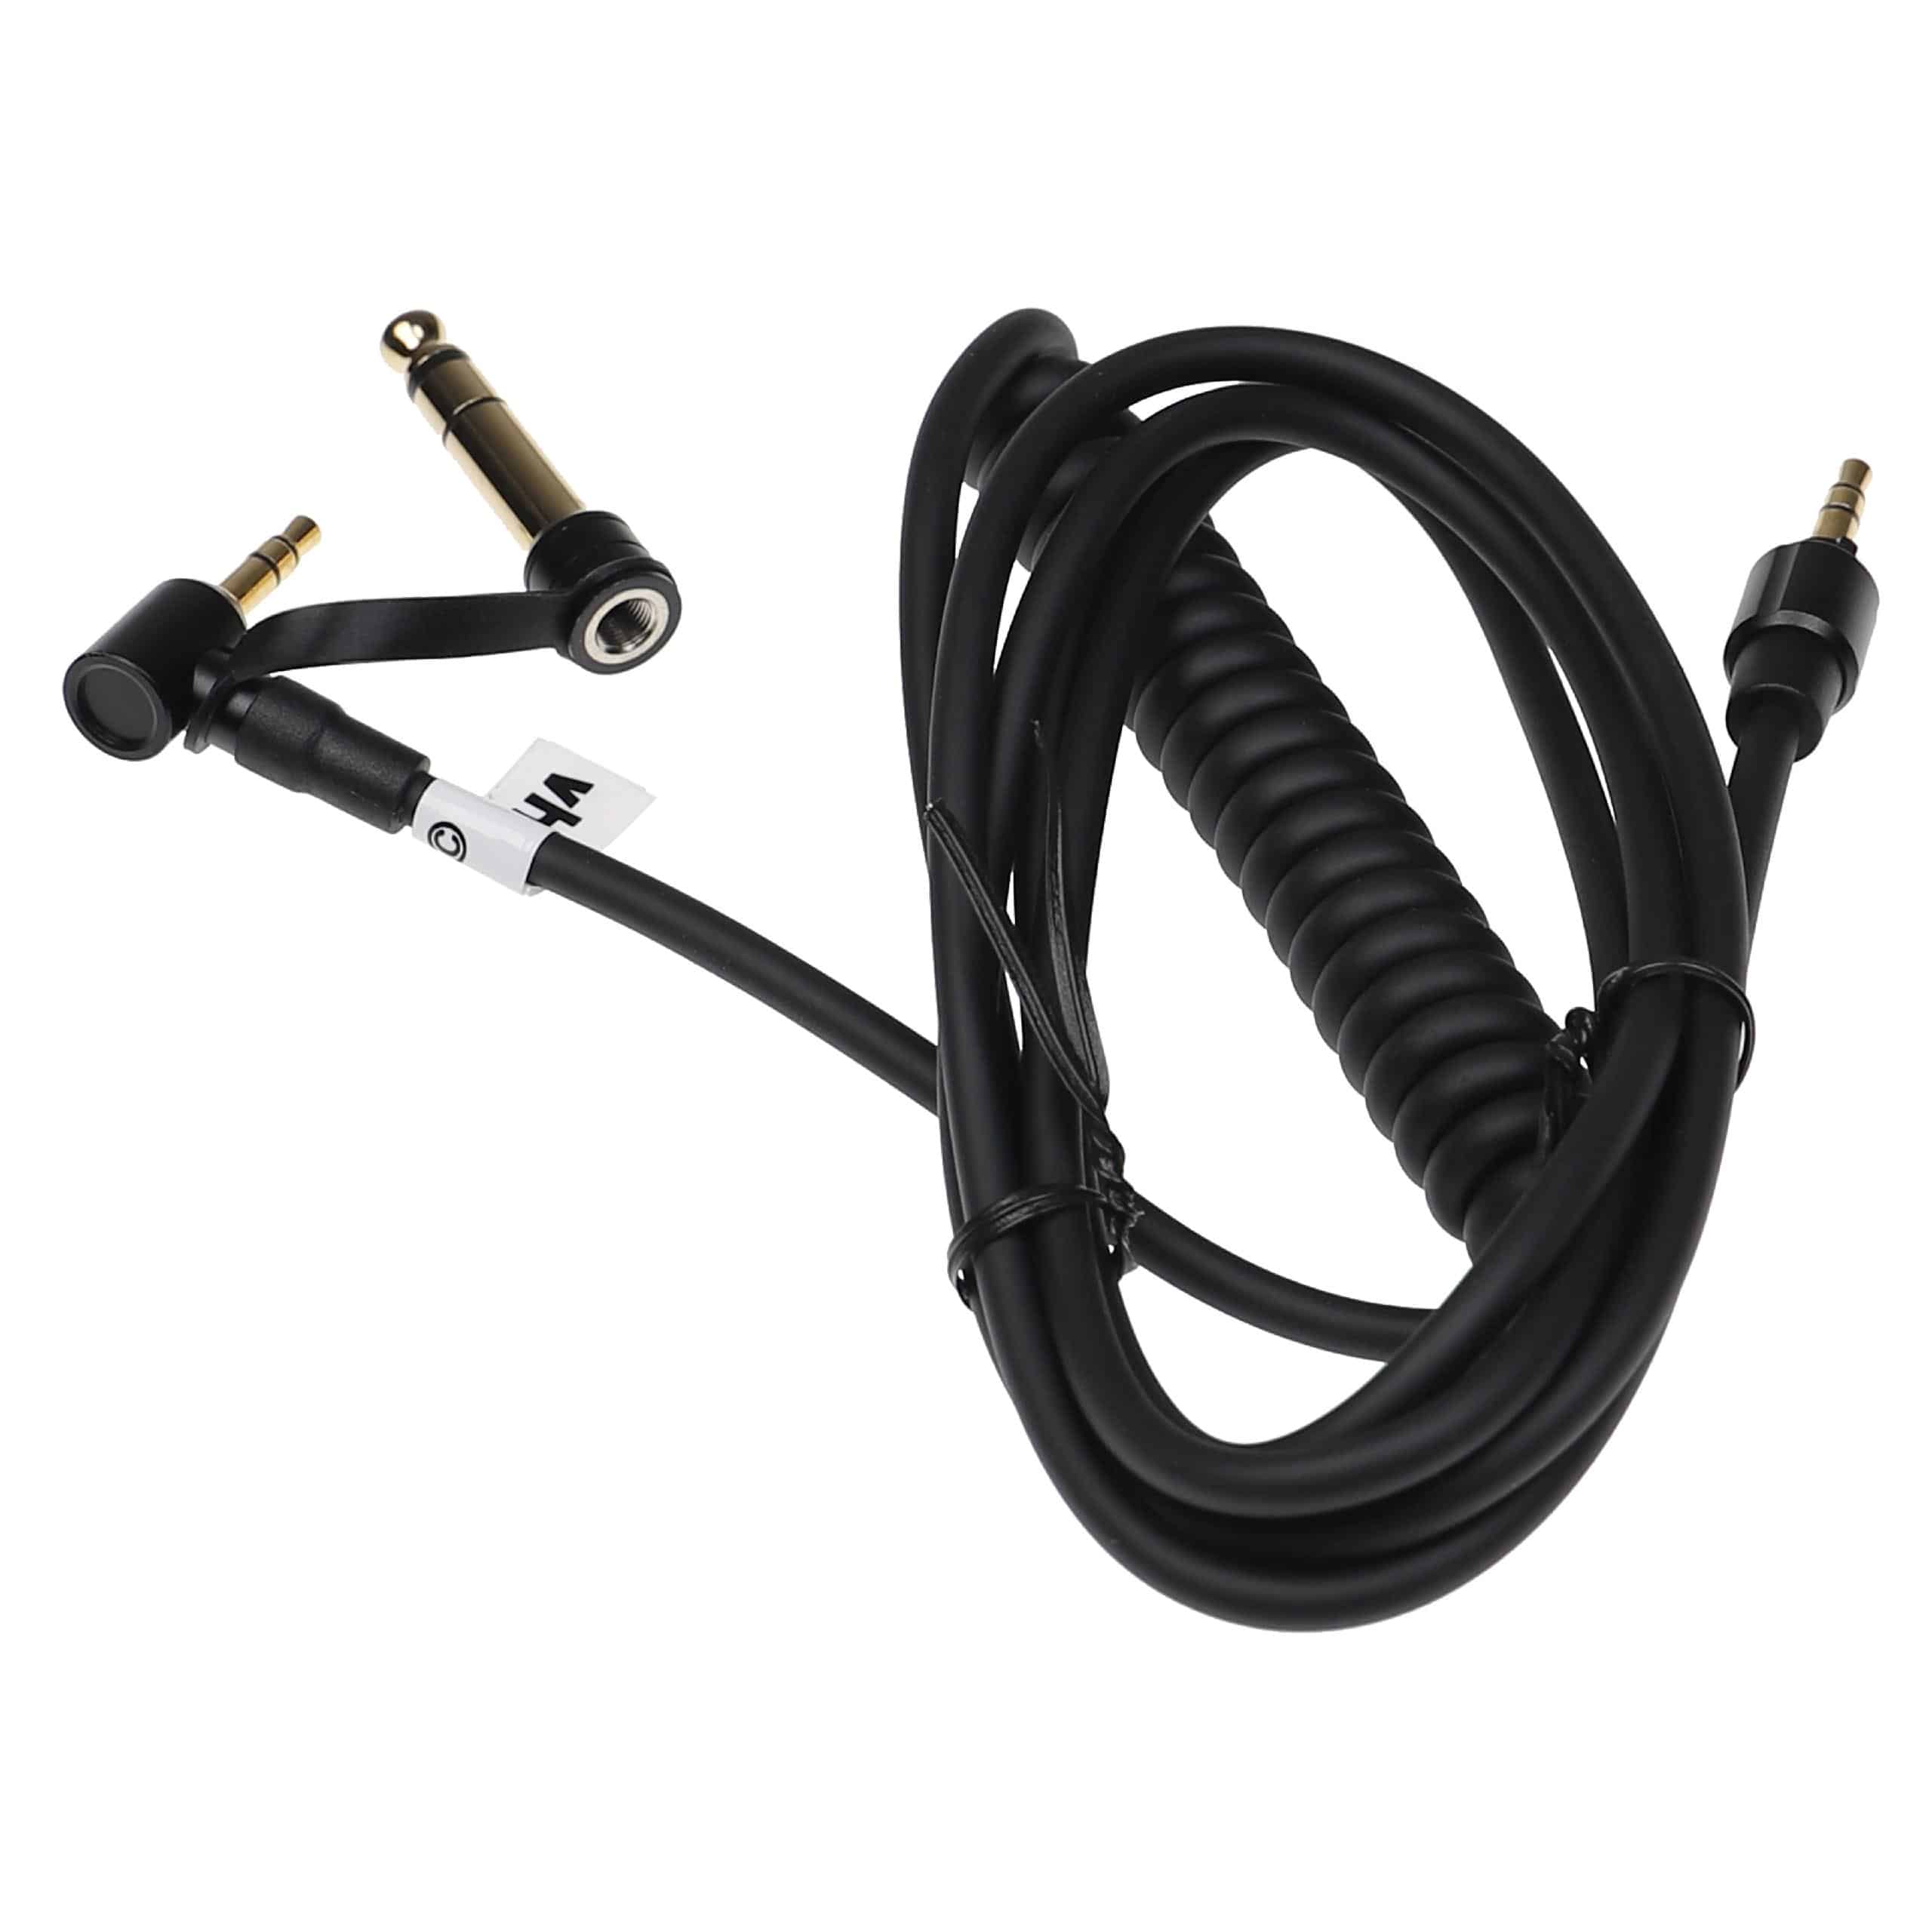 Cable audio AUX a conector jack de 3,5 mm, de 6,3 mm para auriculares Monster Beats by Dr. Dre Beats EP